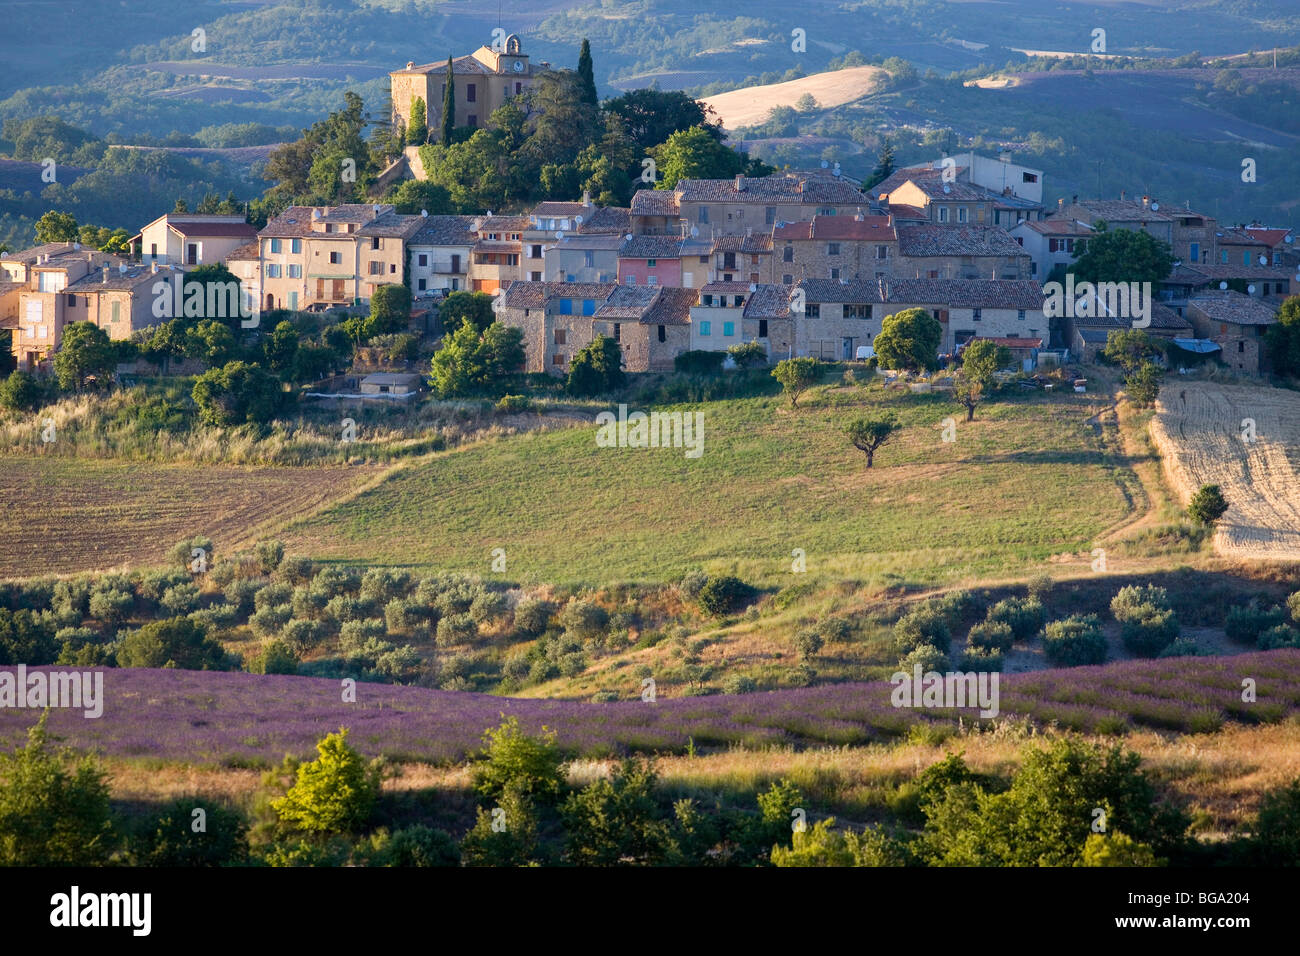 France, Alpes de Haute Provence, Entrevennes, lavender field Stock Photo